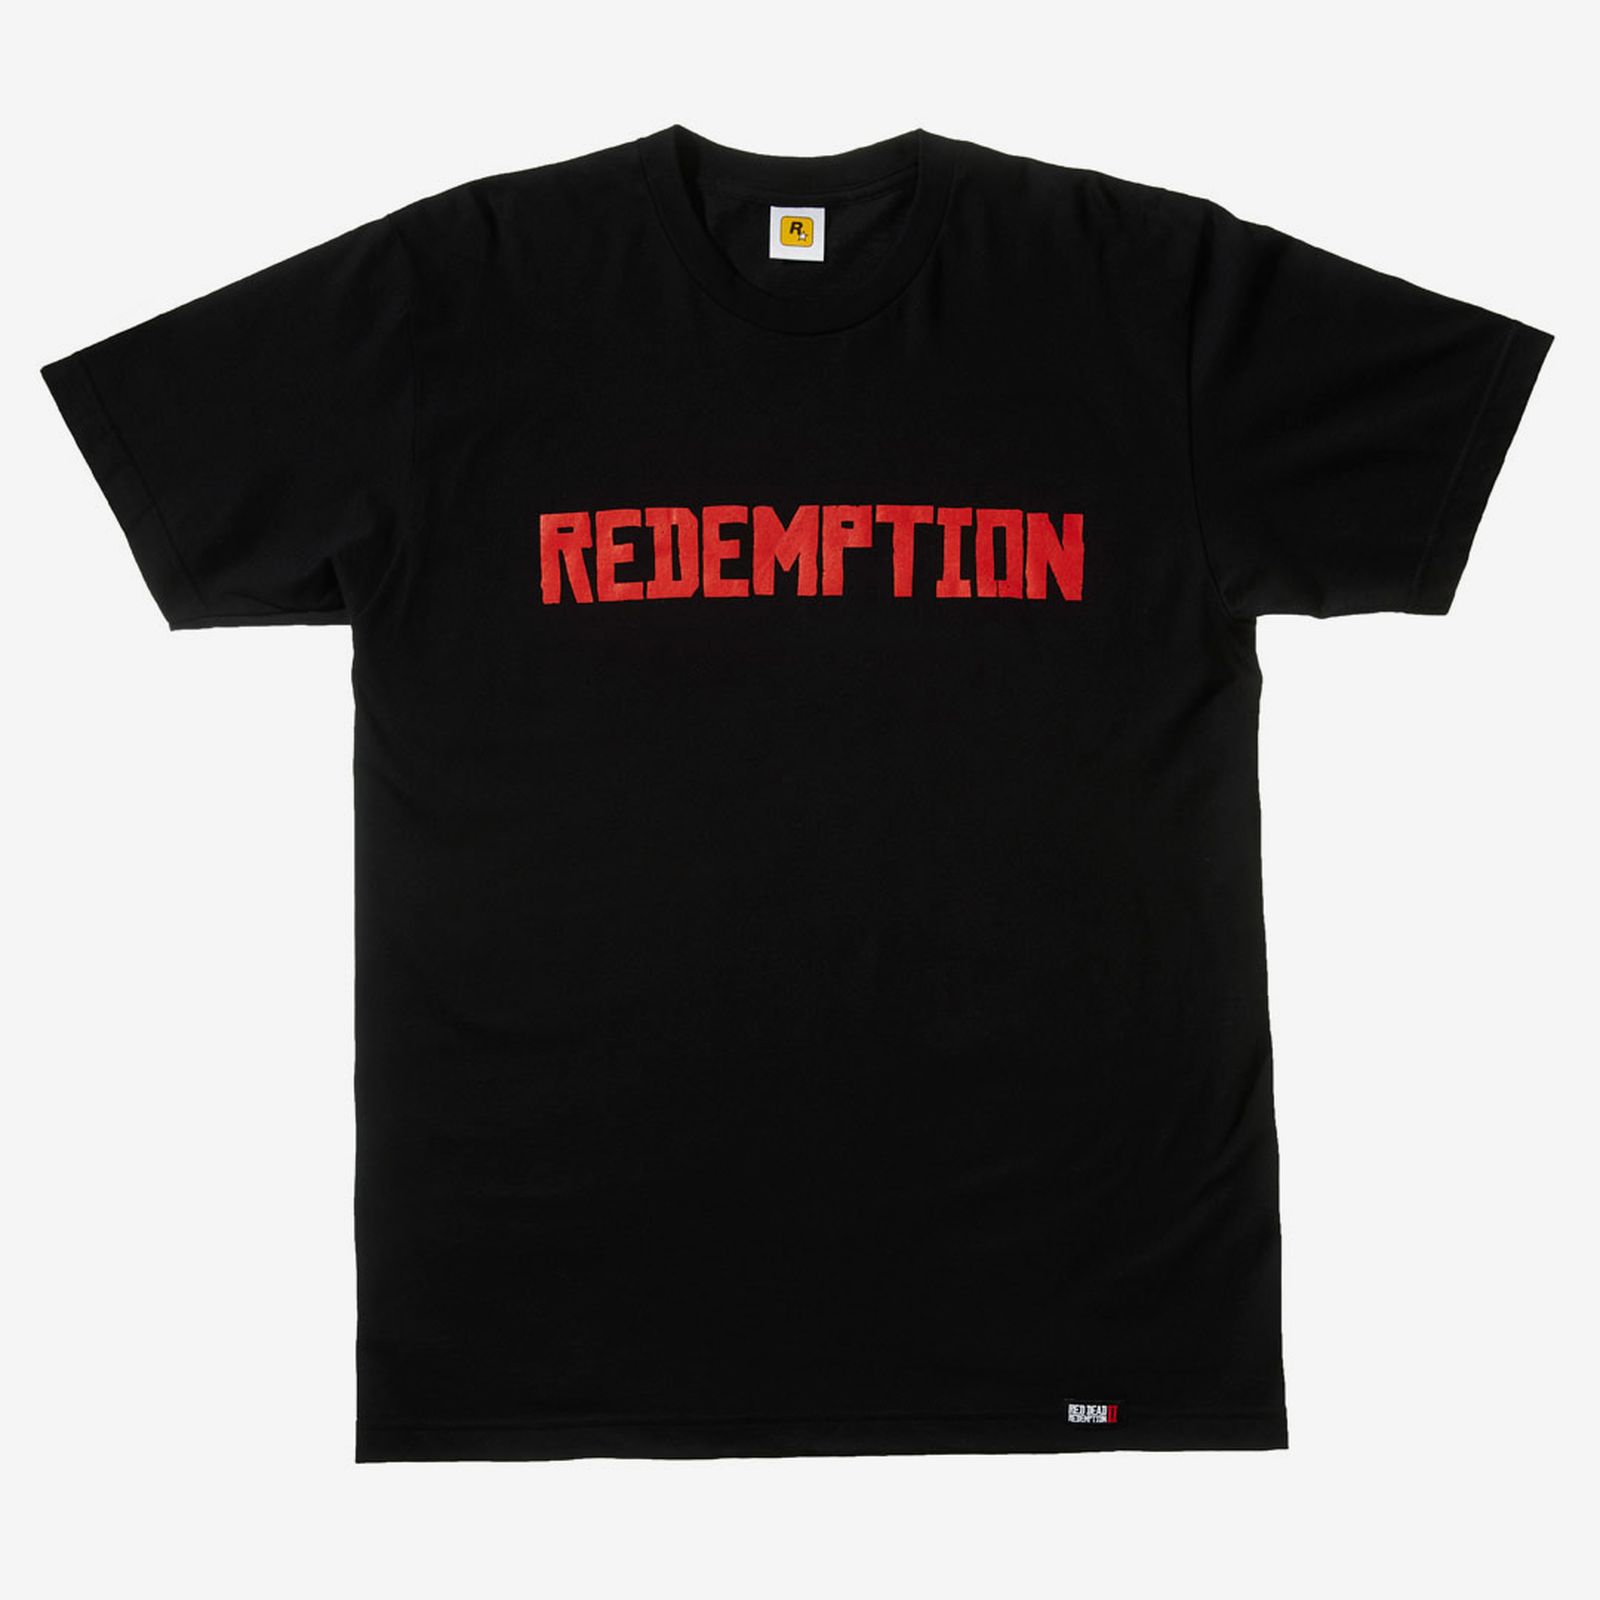 Tee Black Redemption Red Dead Redemption 2 rockstar games